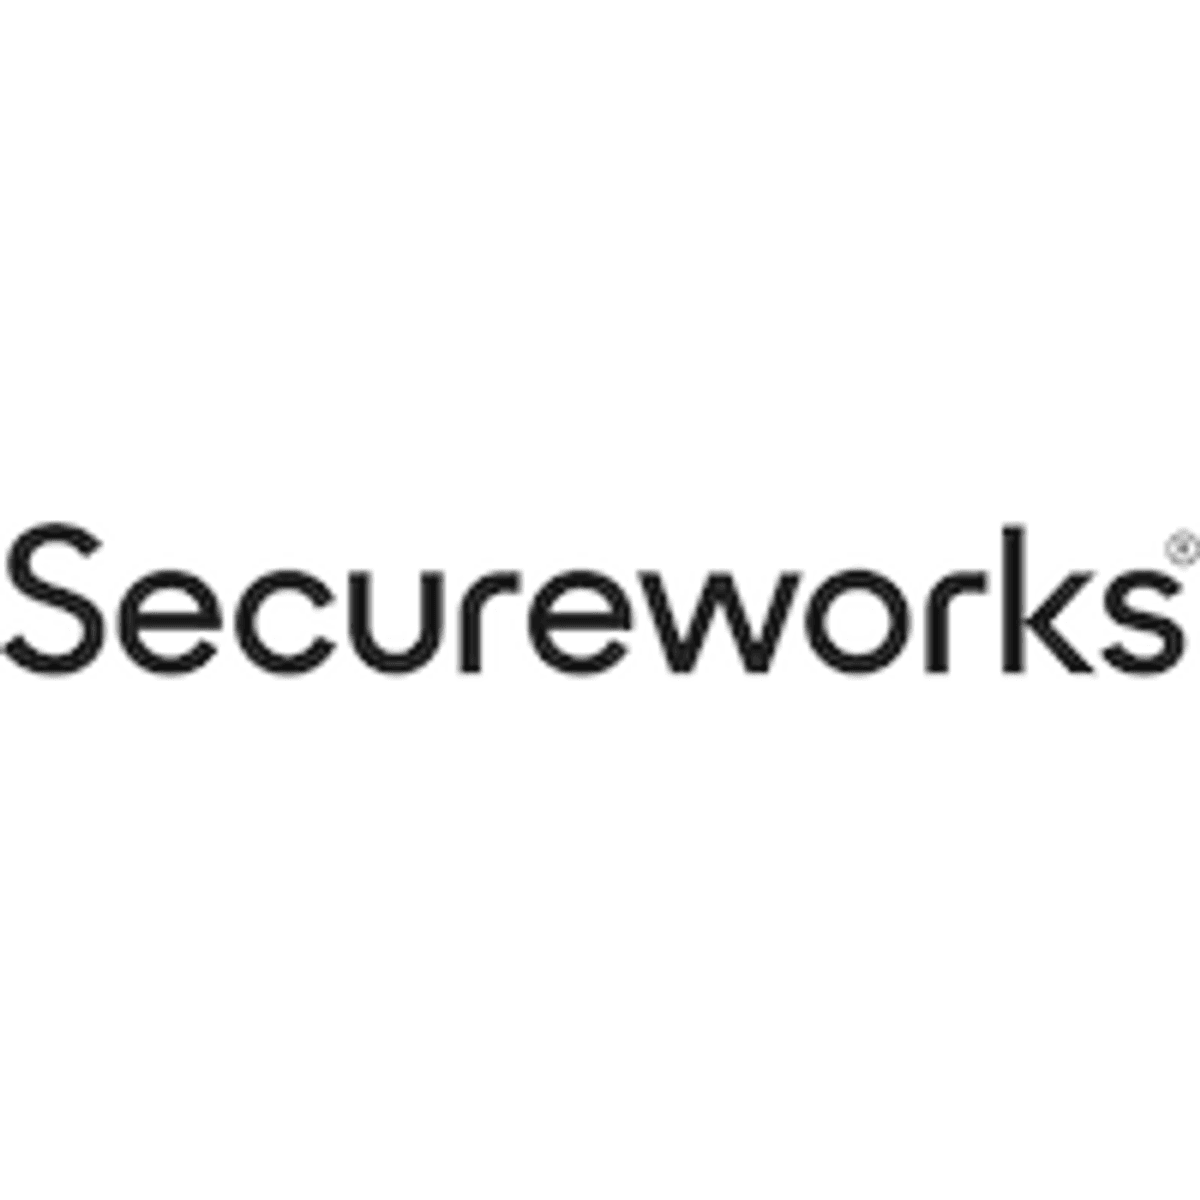 Secureworks levert nieuwe security-analysefuncties image